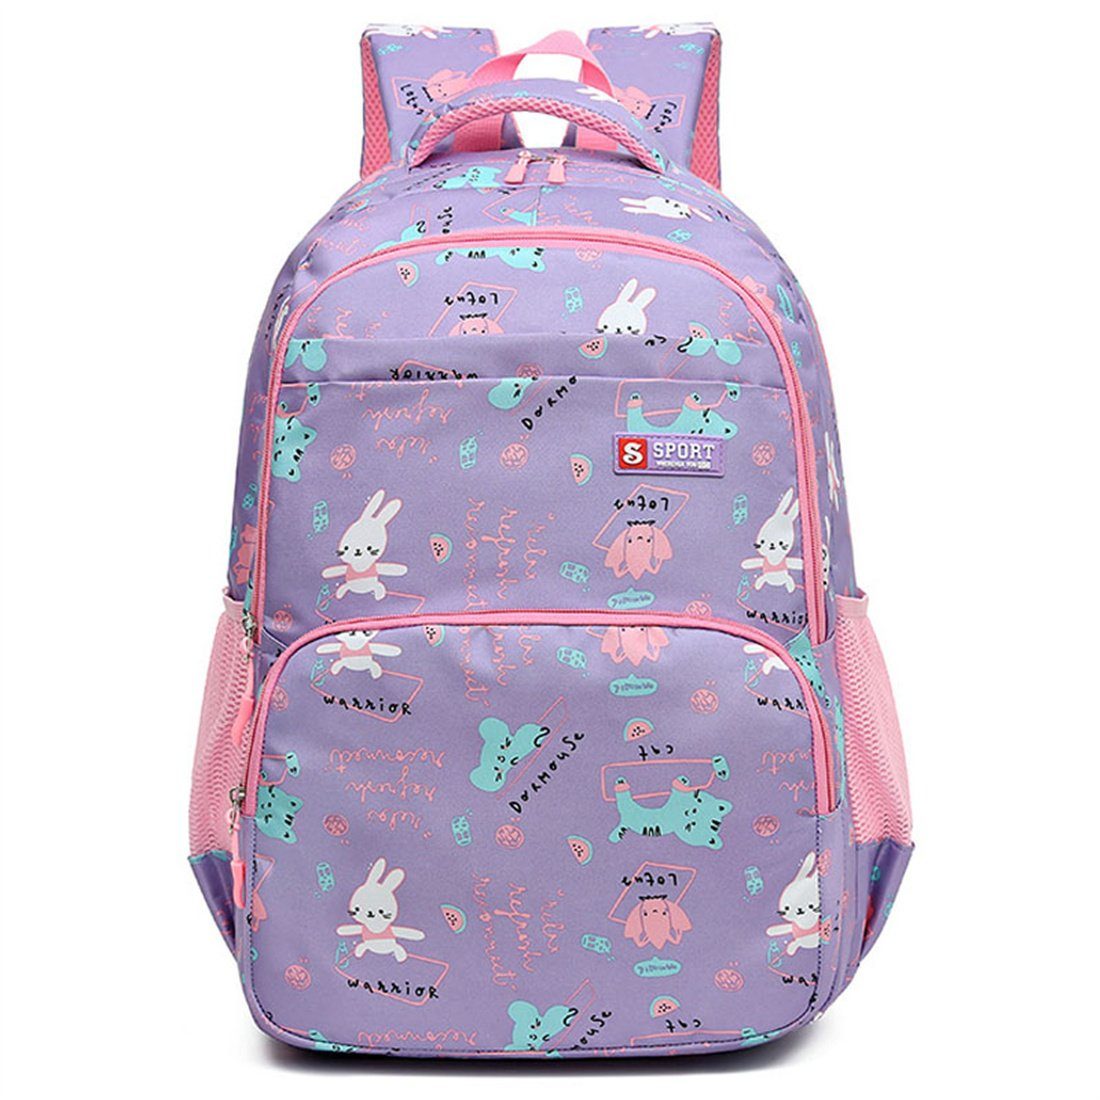 DÖRÖY Schulranzen Schultaschen für Kinder der 1. bis 6. Klasse, Schulrucksäcke,Geschenke Lila